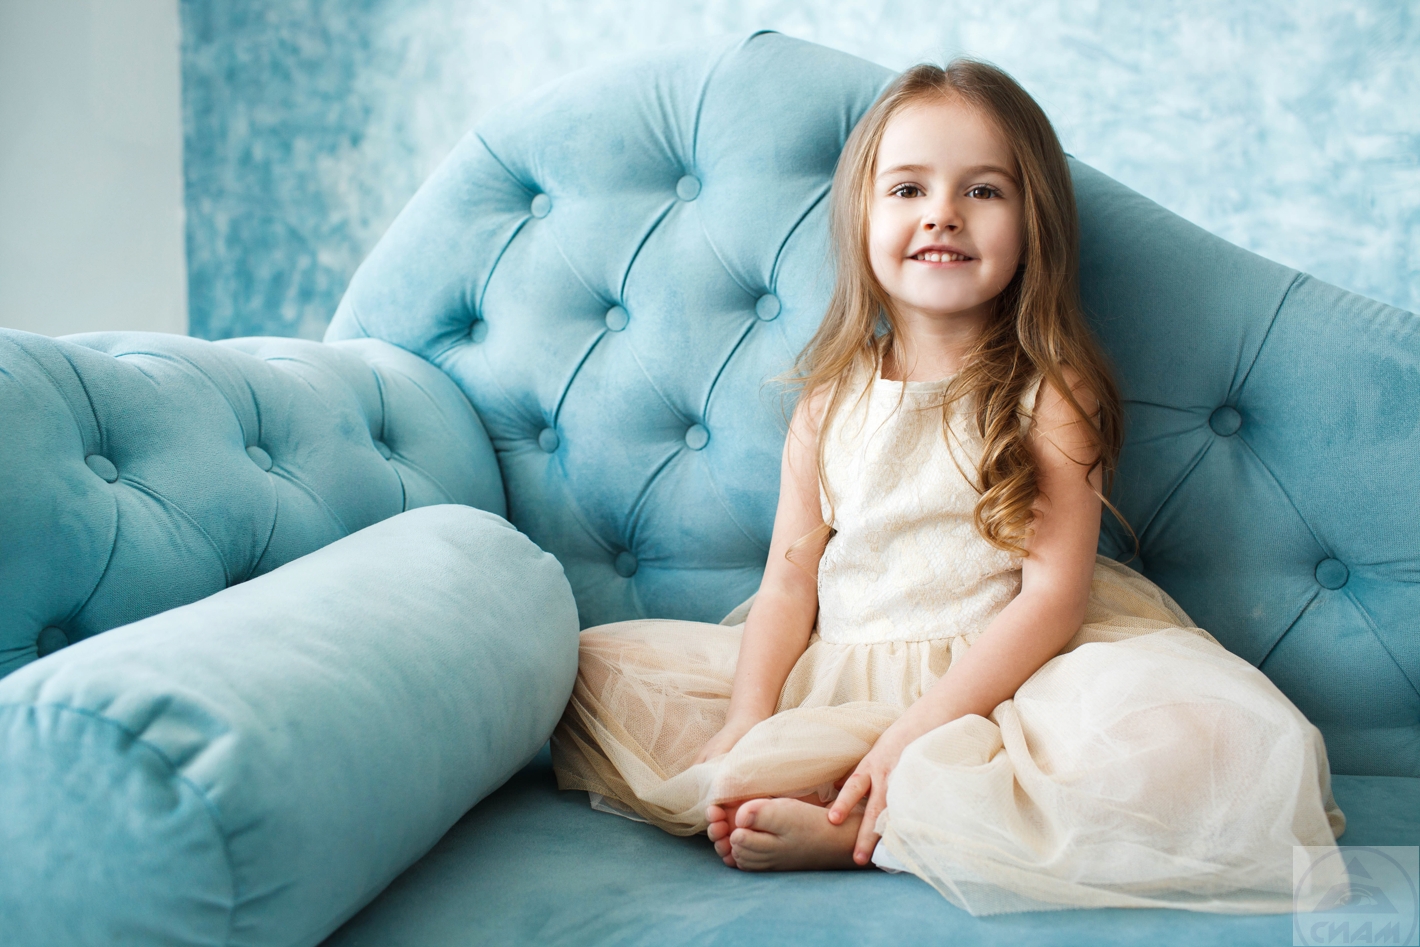 Детская мебель — как выбрать идеальный диван для ребёнка.